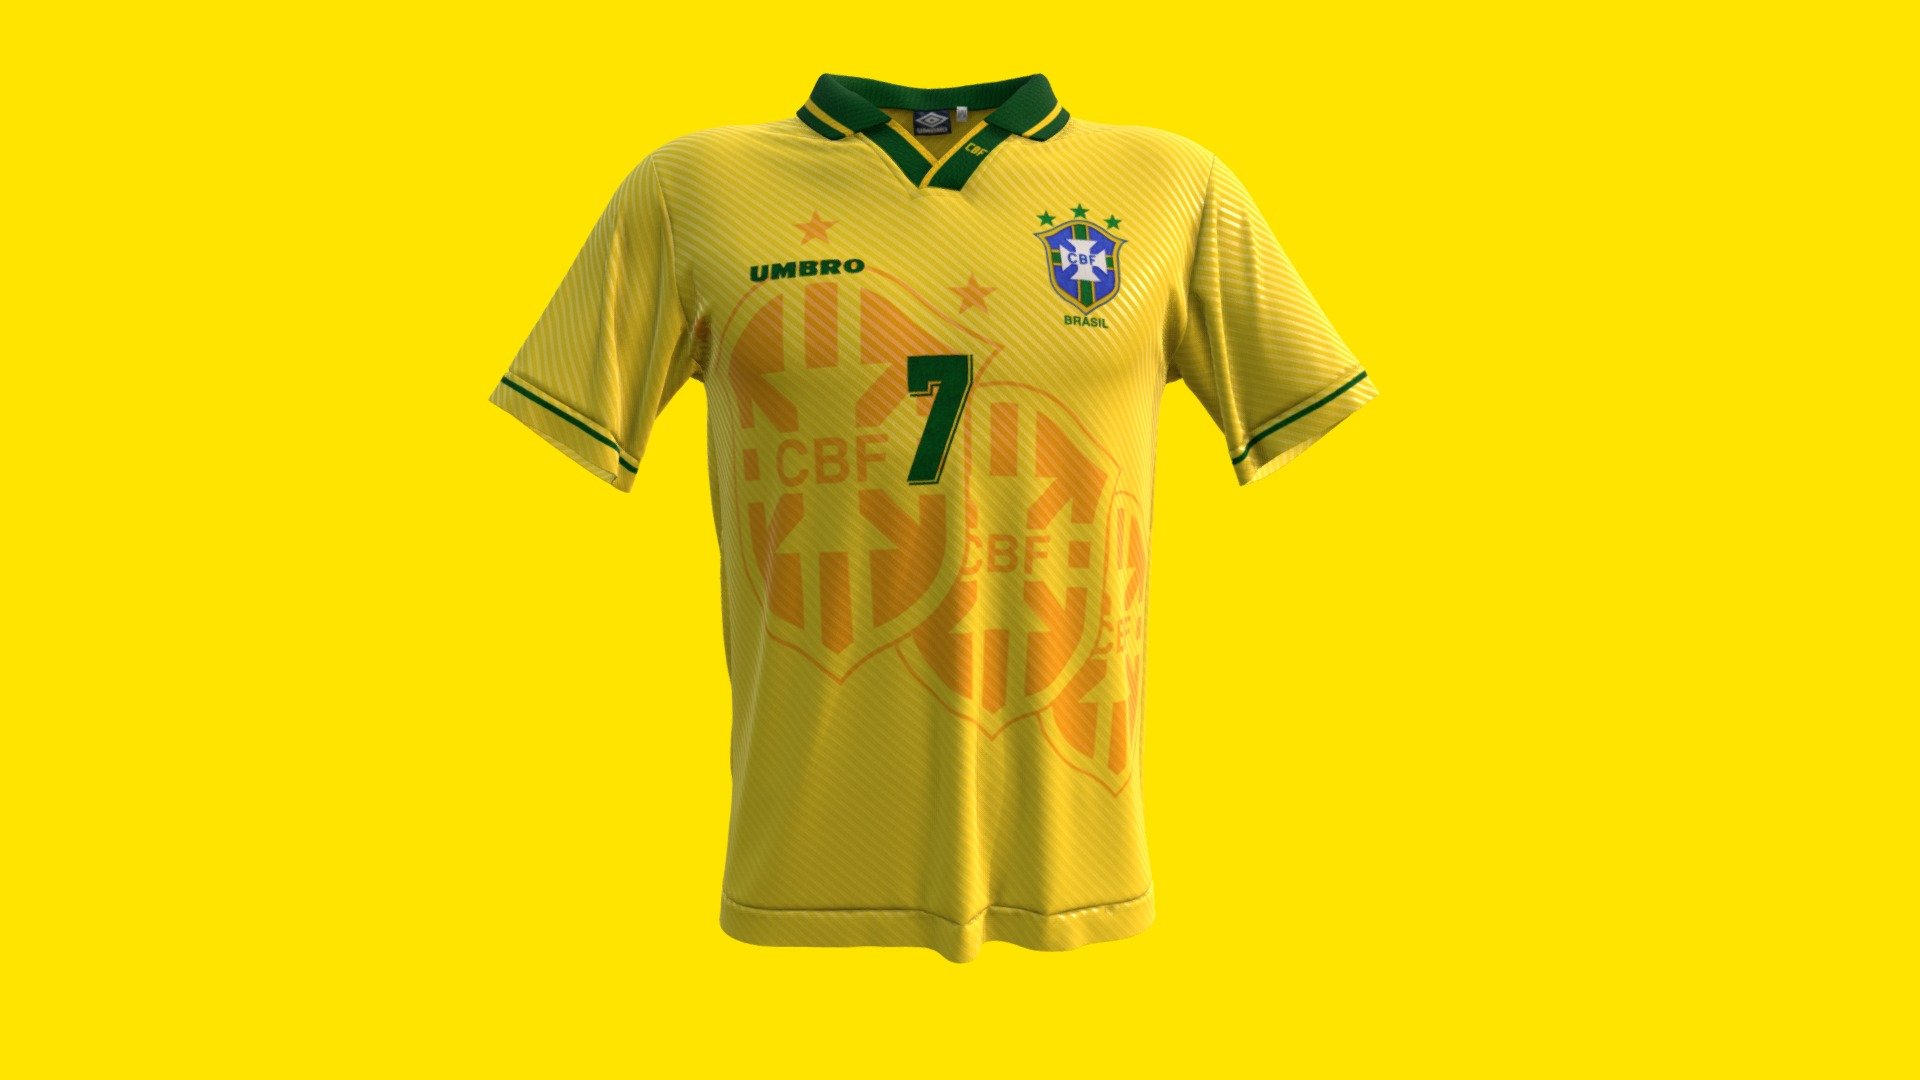 Camisa titular usado pela seleção brasileira em 1994
Home jersey used by brazilian team football in 1994 - Seleção Brasileira 1994 - Camisa Titular - Buy Royalty Free 3D model by vitorfarias 3d model